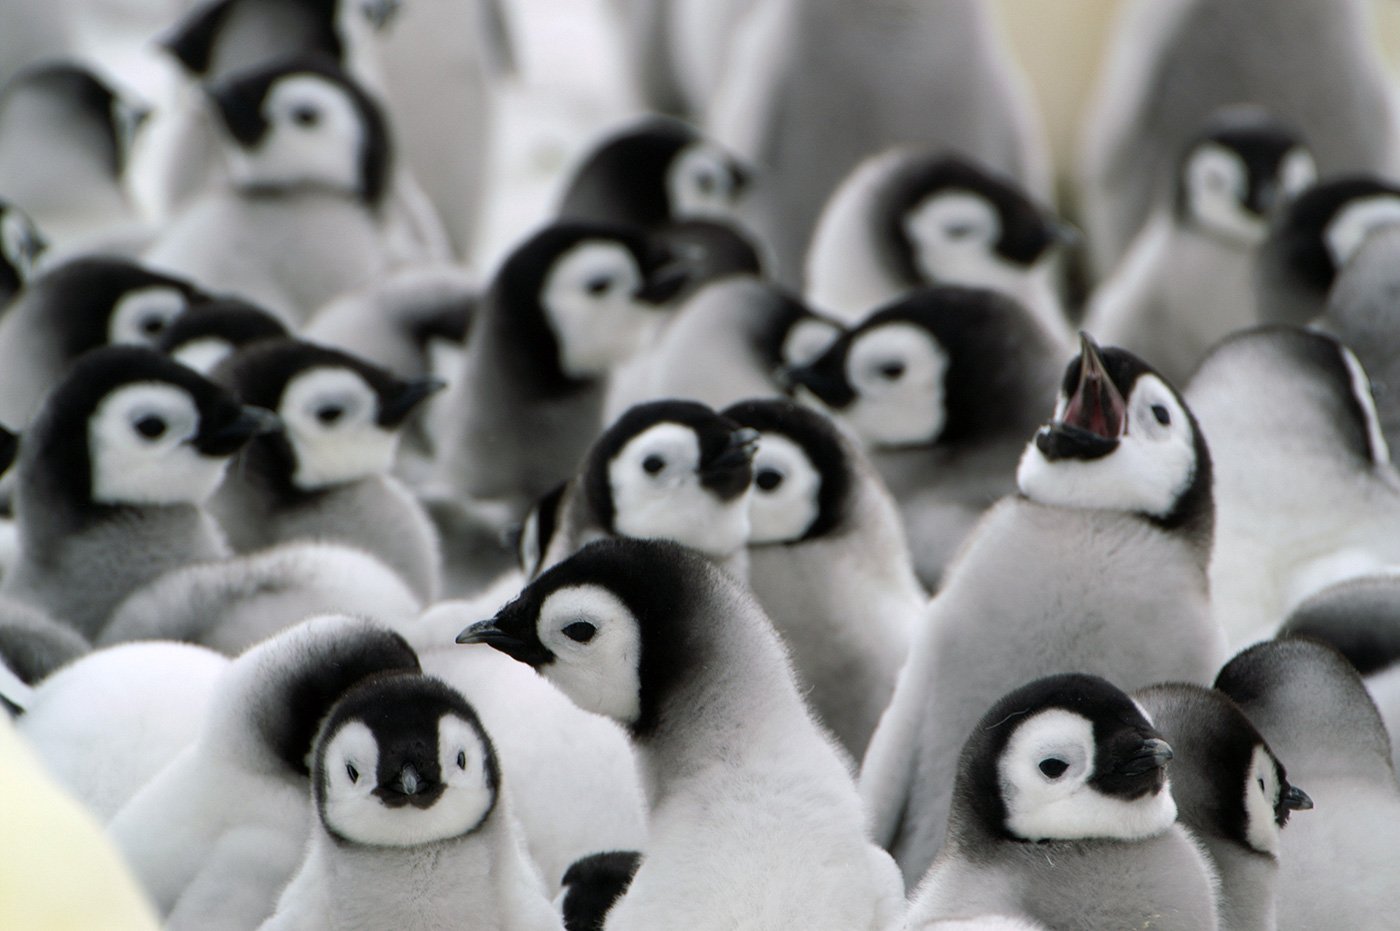 Emperor penguin chicks - Photo credit: Quark passenger: Rene